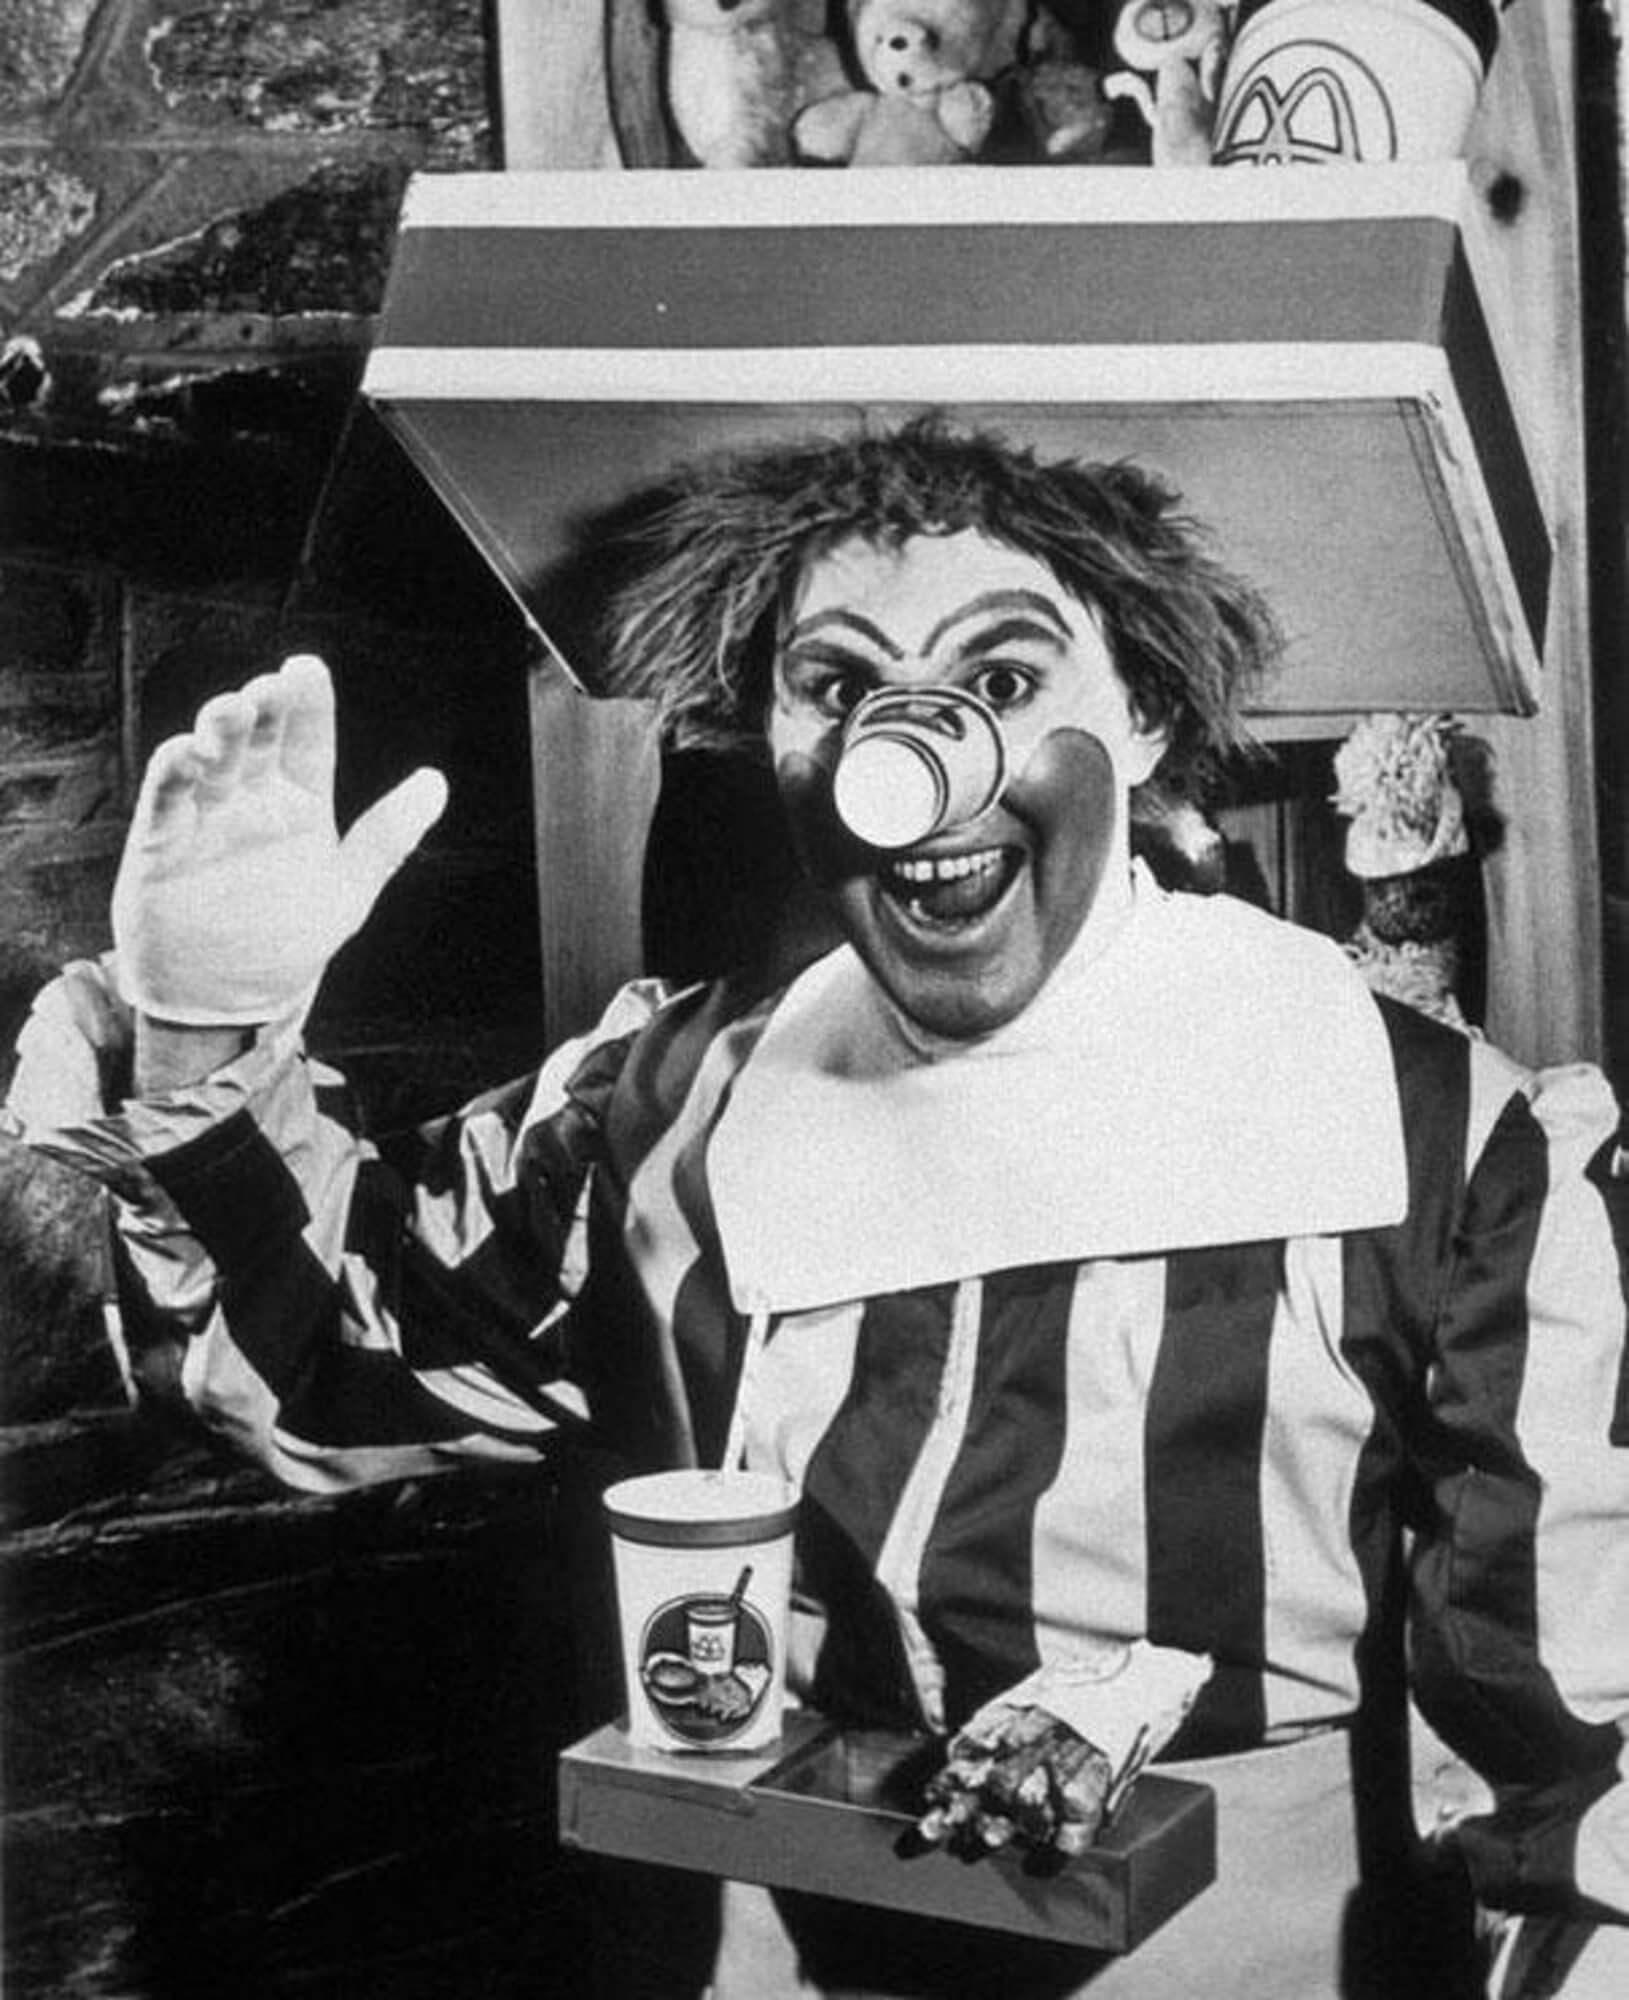 Una de las primeras fotos del personaje de McDonald's en blanco y negro